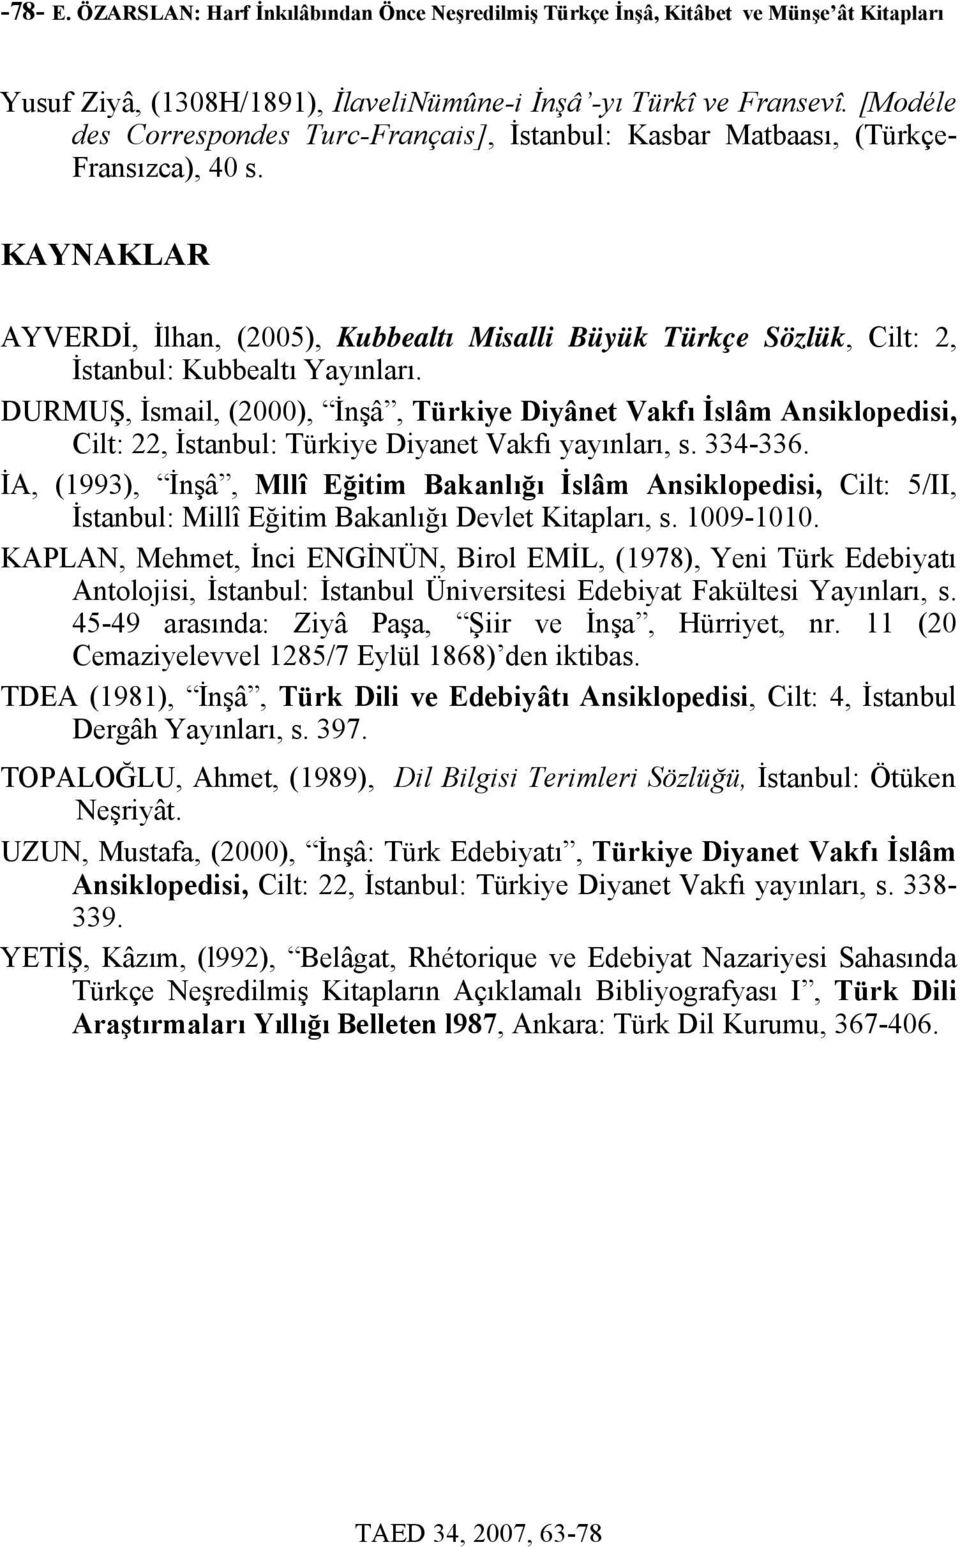 KAYNAKLAR AYVERDİ, İlhan, (2005), Kubbealtı Misalli Büyük Türkçe Sözlük, Cilt: 2, İstanbul: Kubbealtı Yayınları.